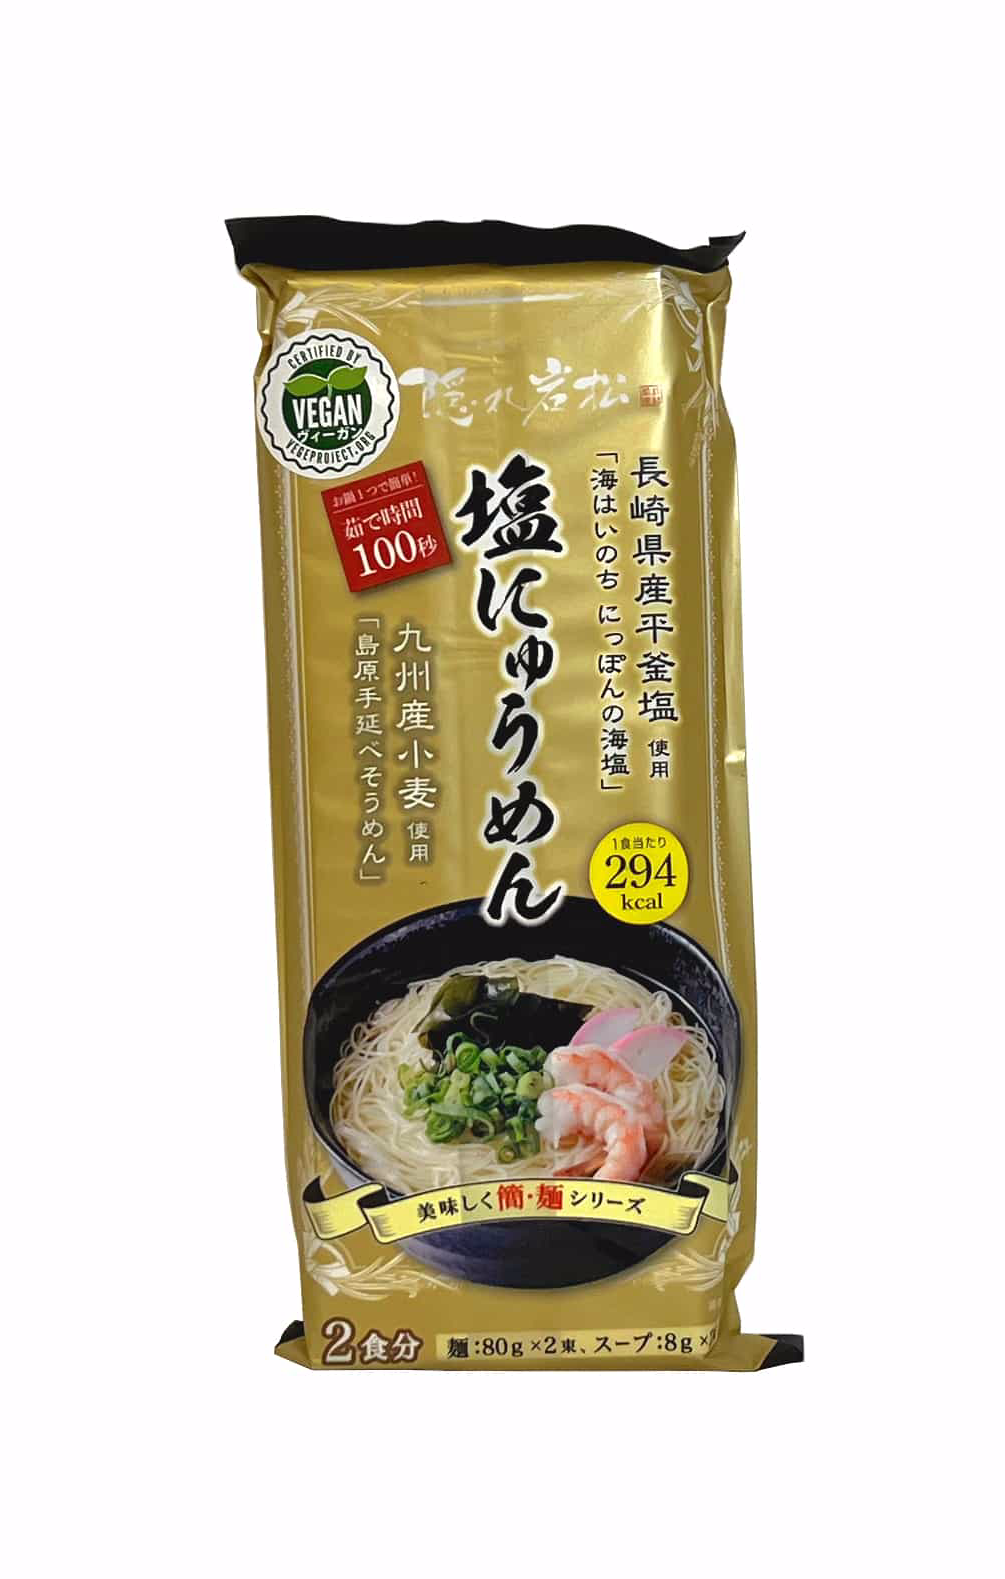 Vegan Ramen Noodles 176g Kakureiwamatsu Yasaidashi Nyumen Japan